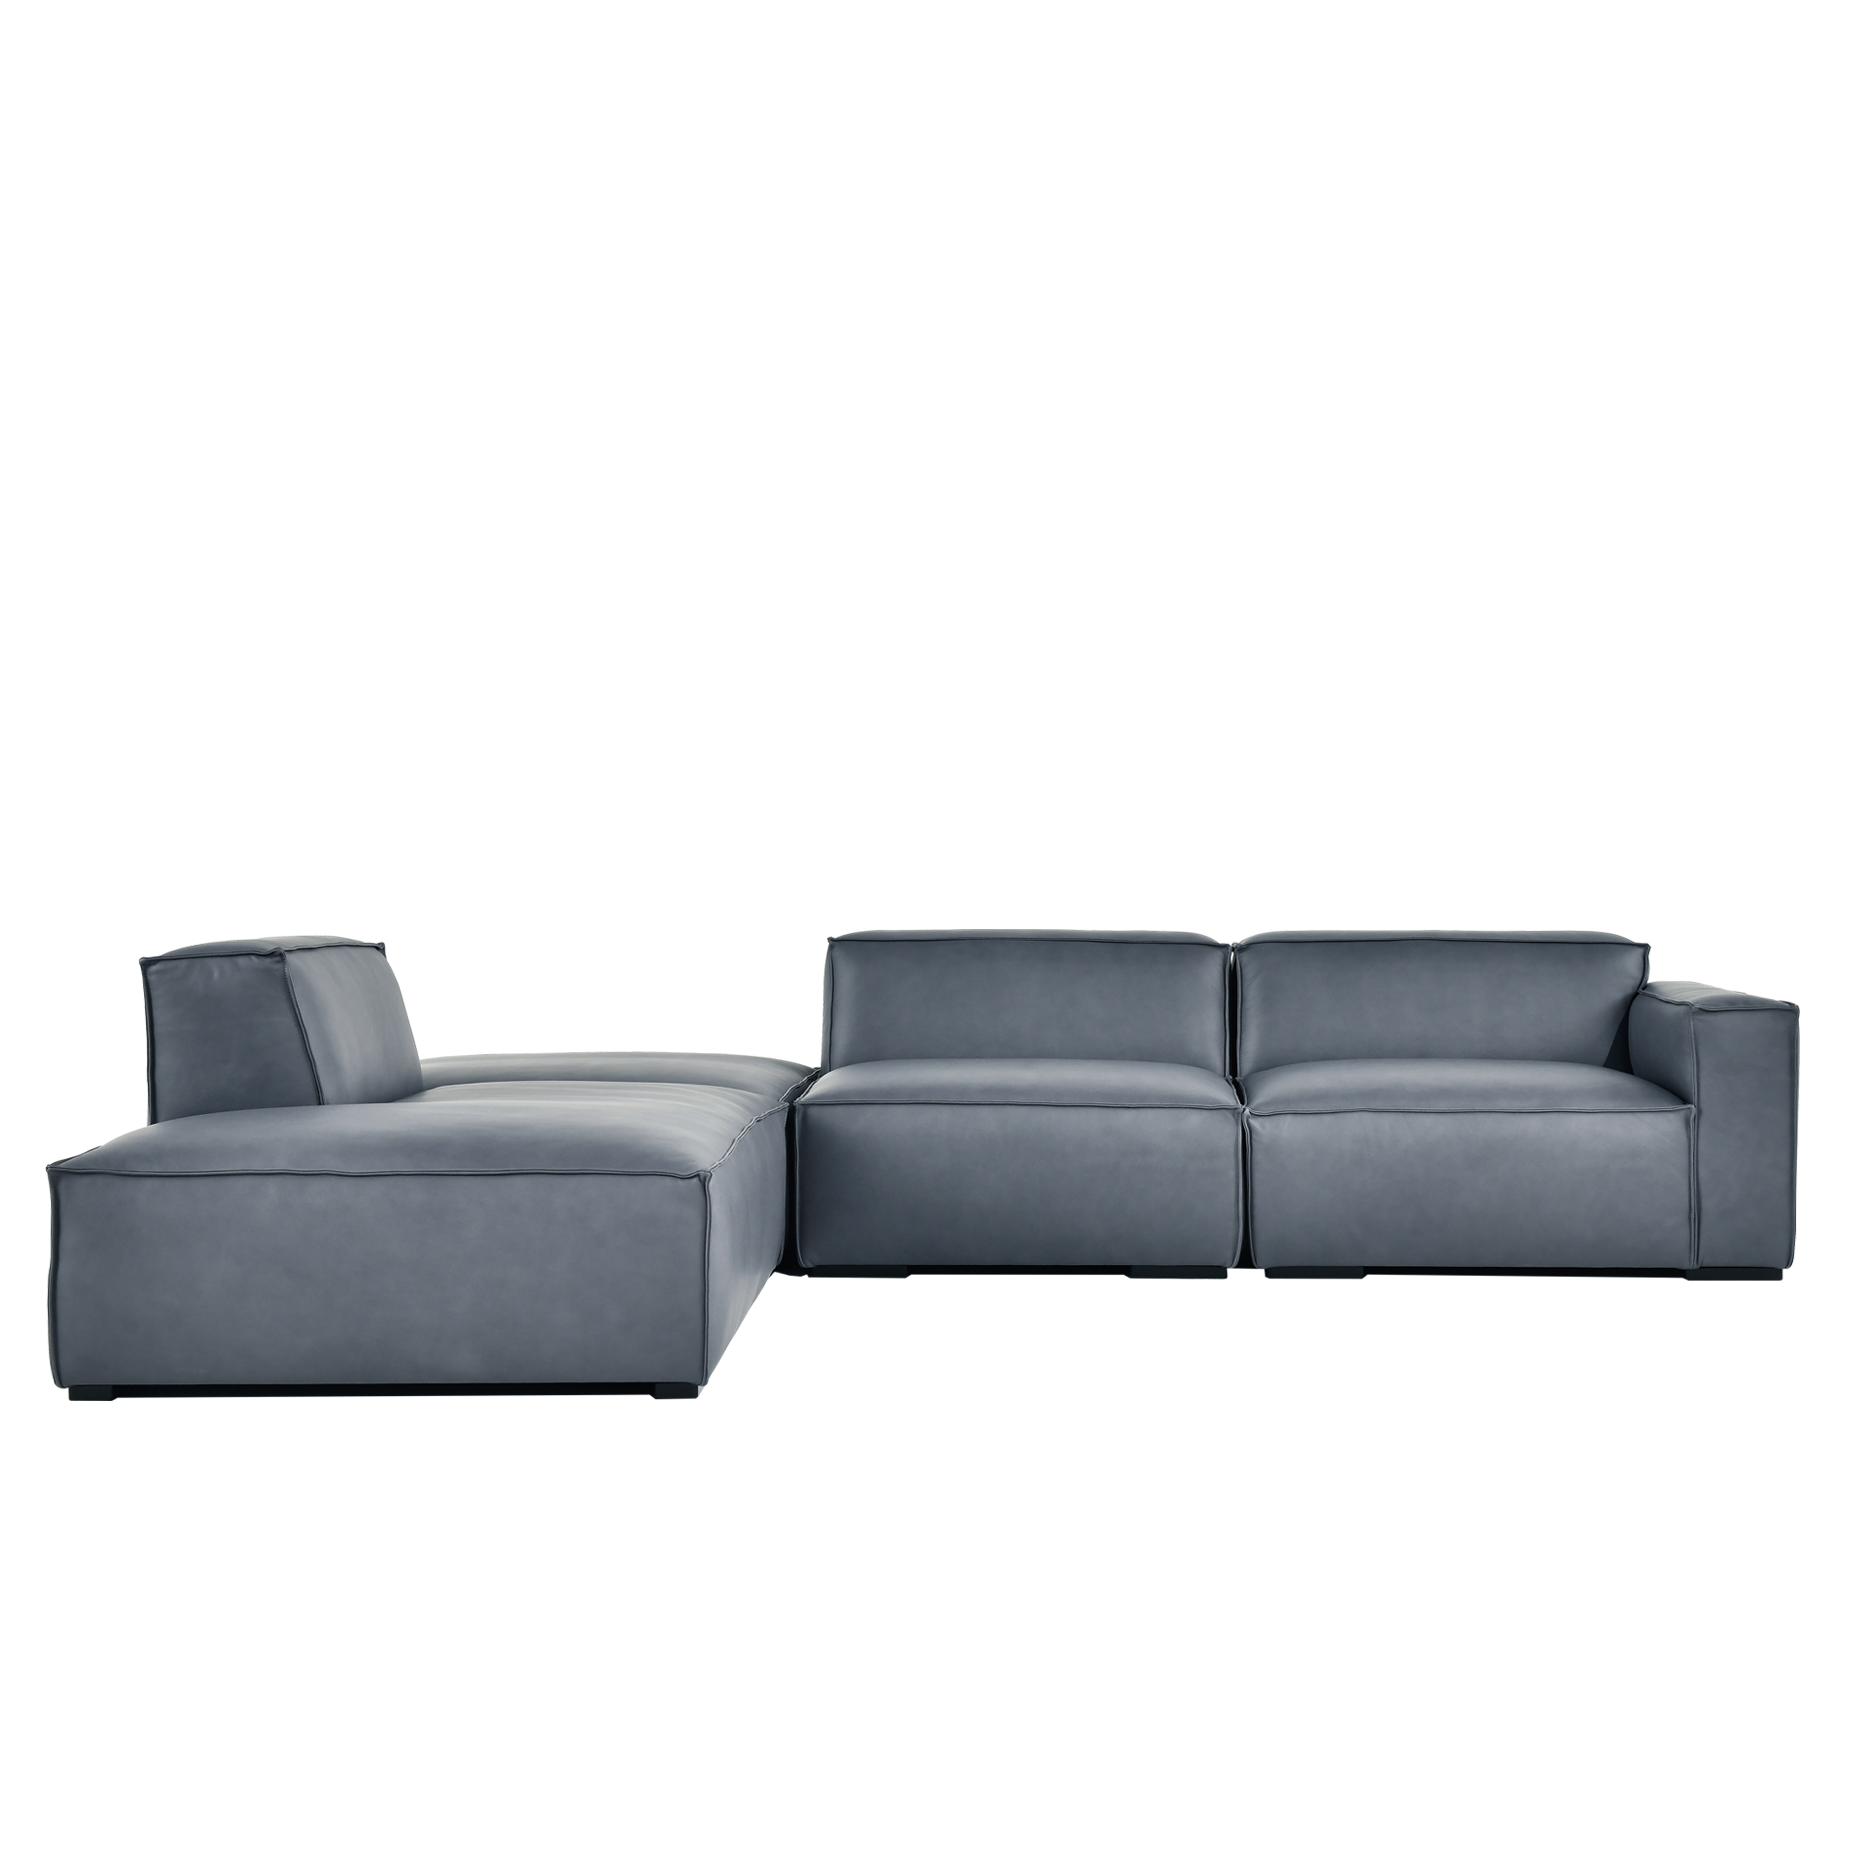 (주)도이치 DOICH ®    PEN2 modular corner couch sofa 도이치 펜2  4인 코너카우치 모듈소파  [4주 주문제작]